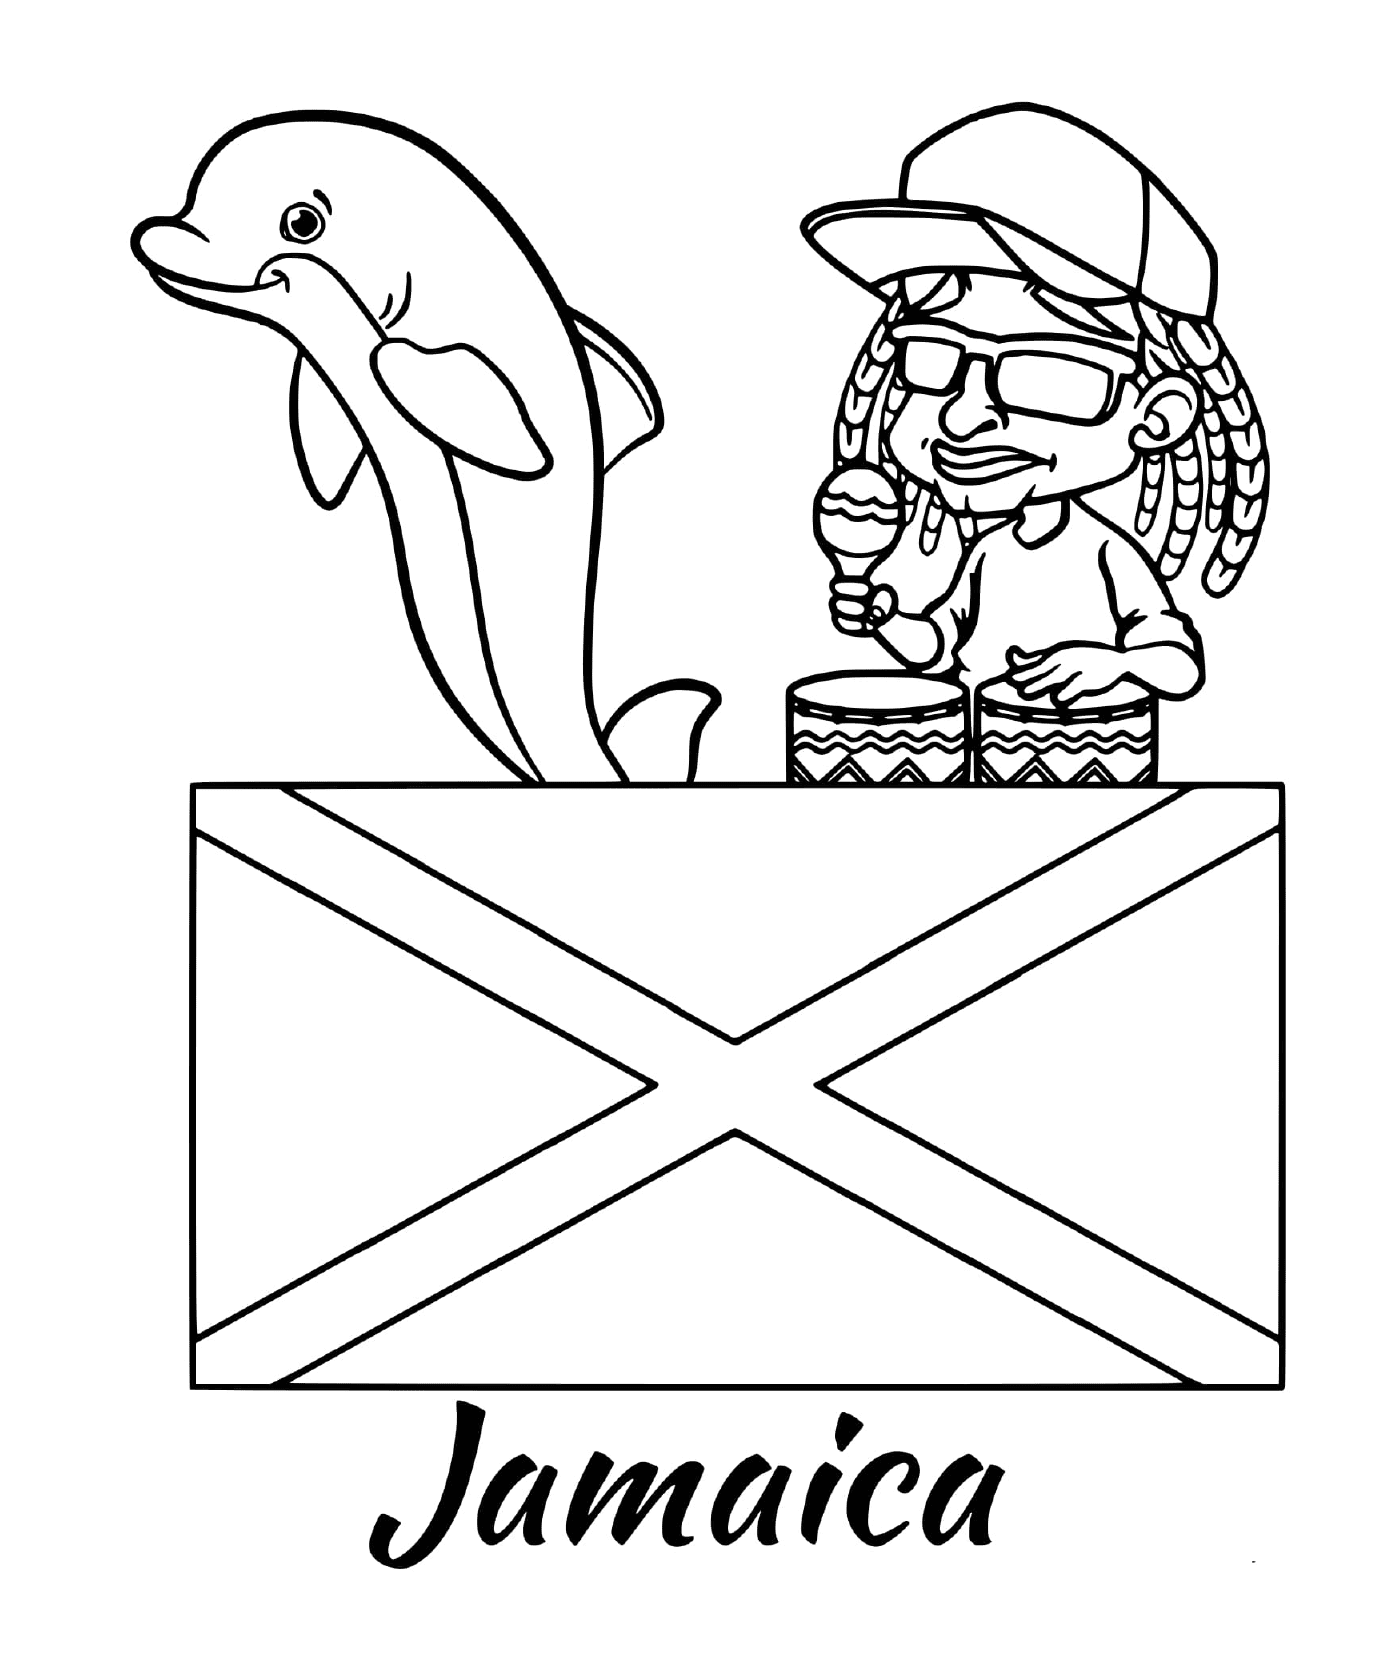  Flag of Jamaica, reggae 